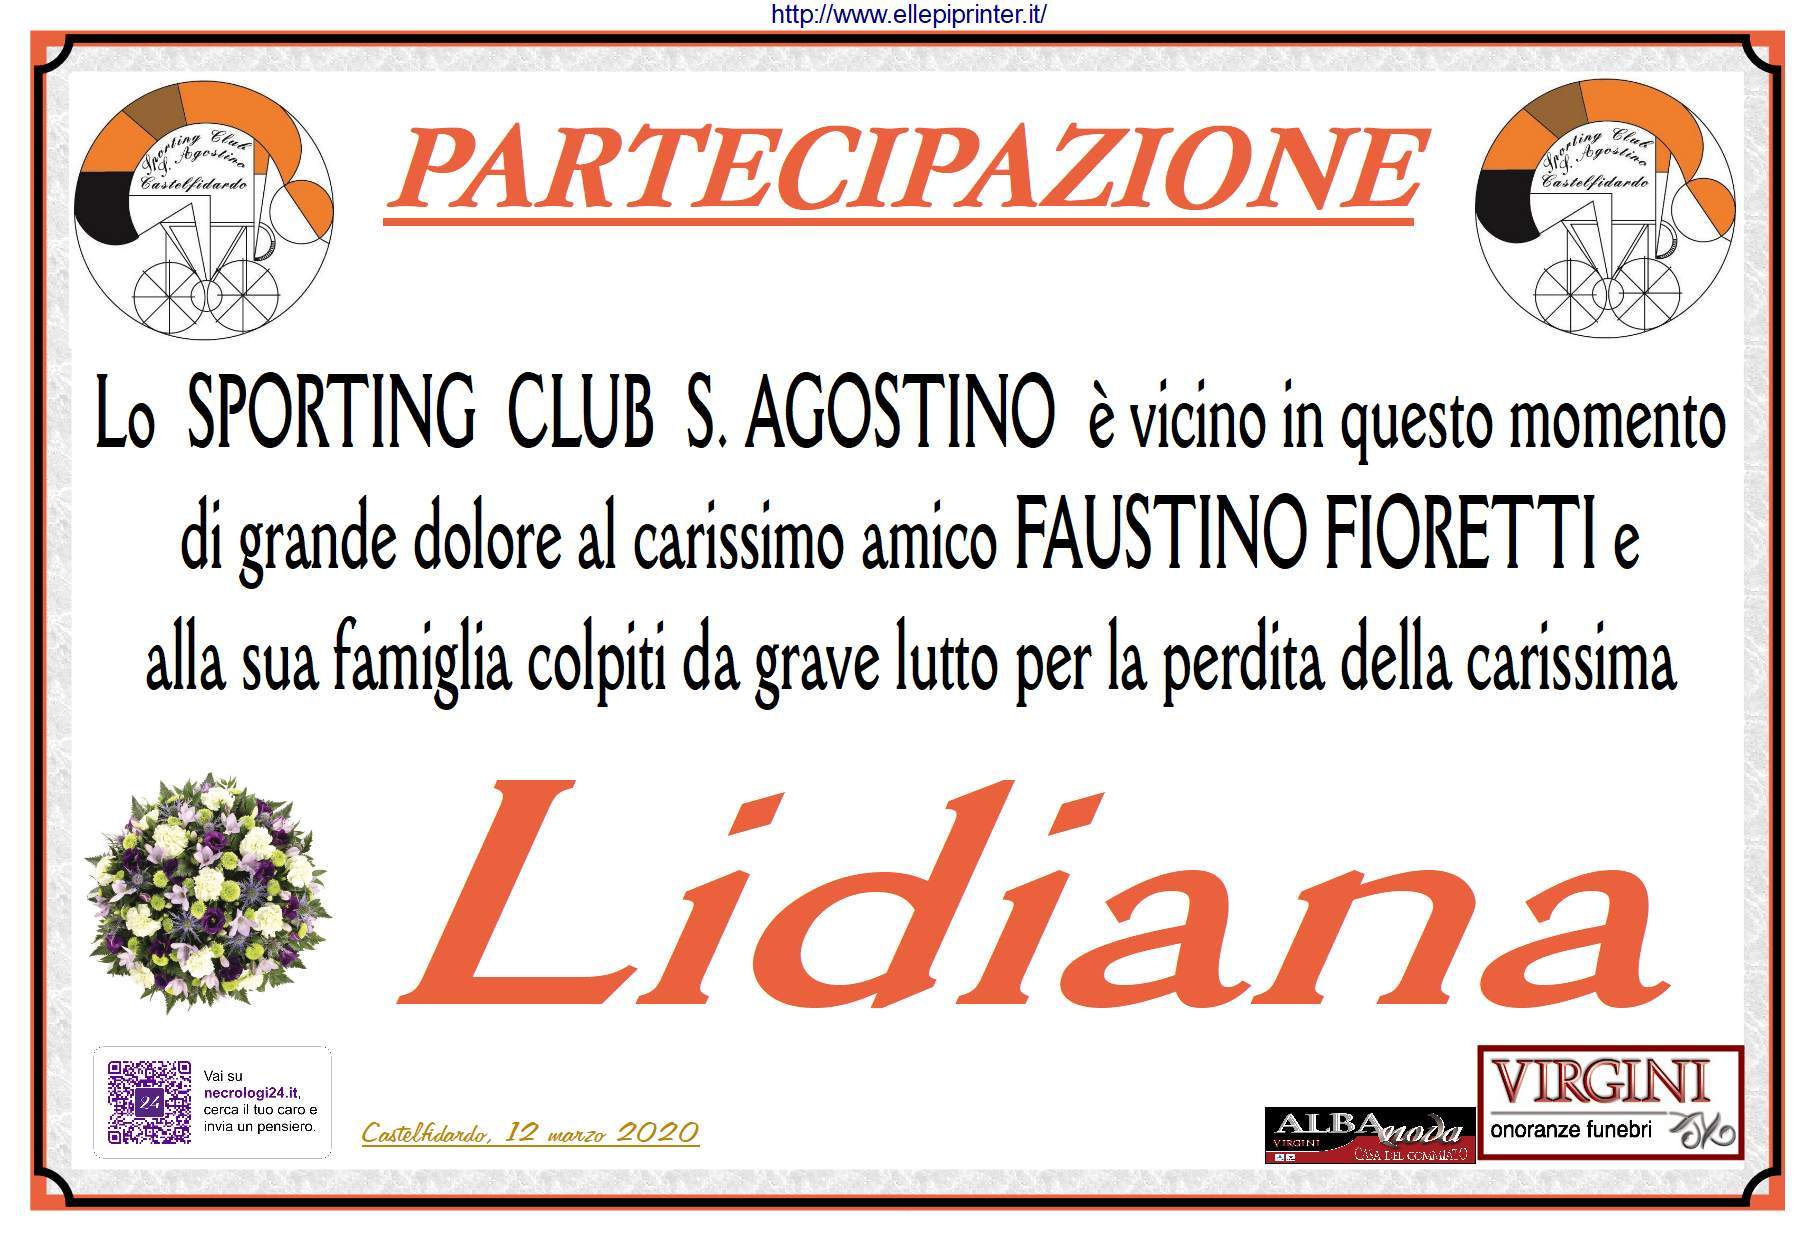 Lo Sporting Club S. Agostino